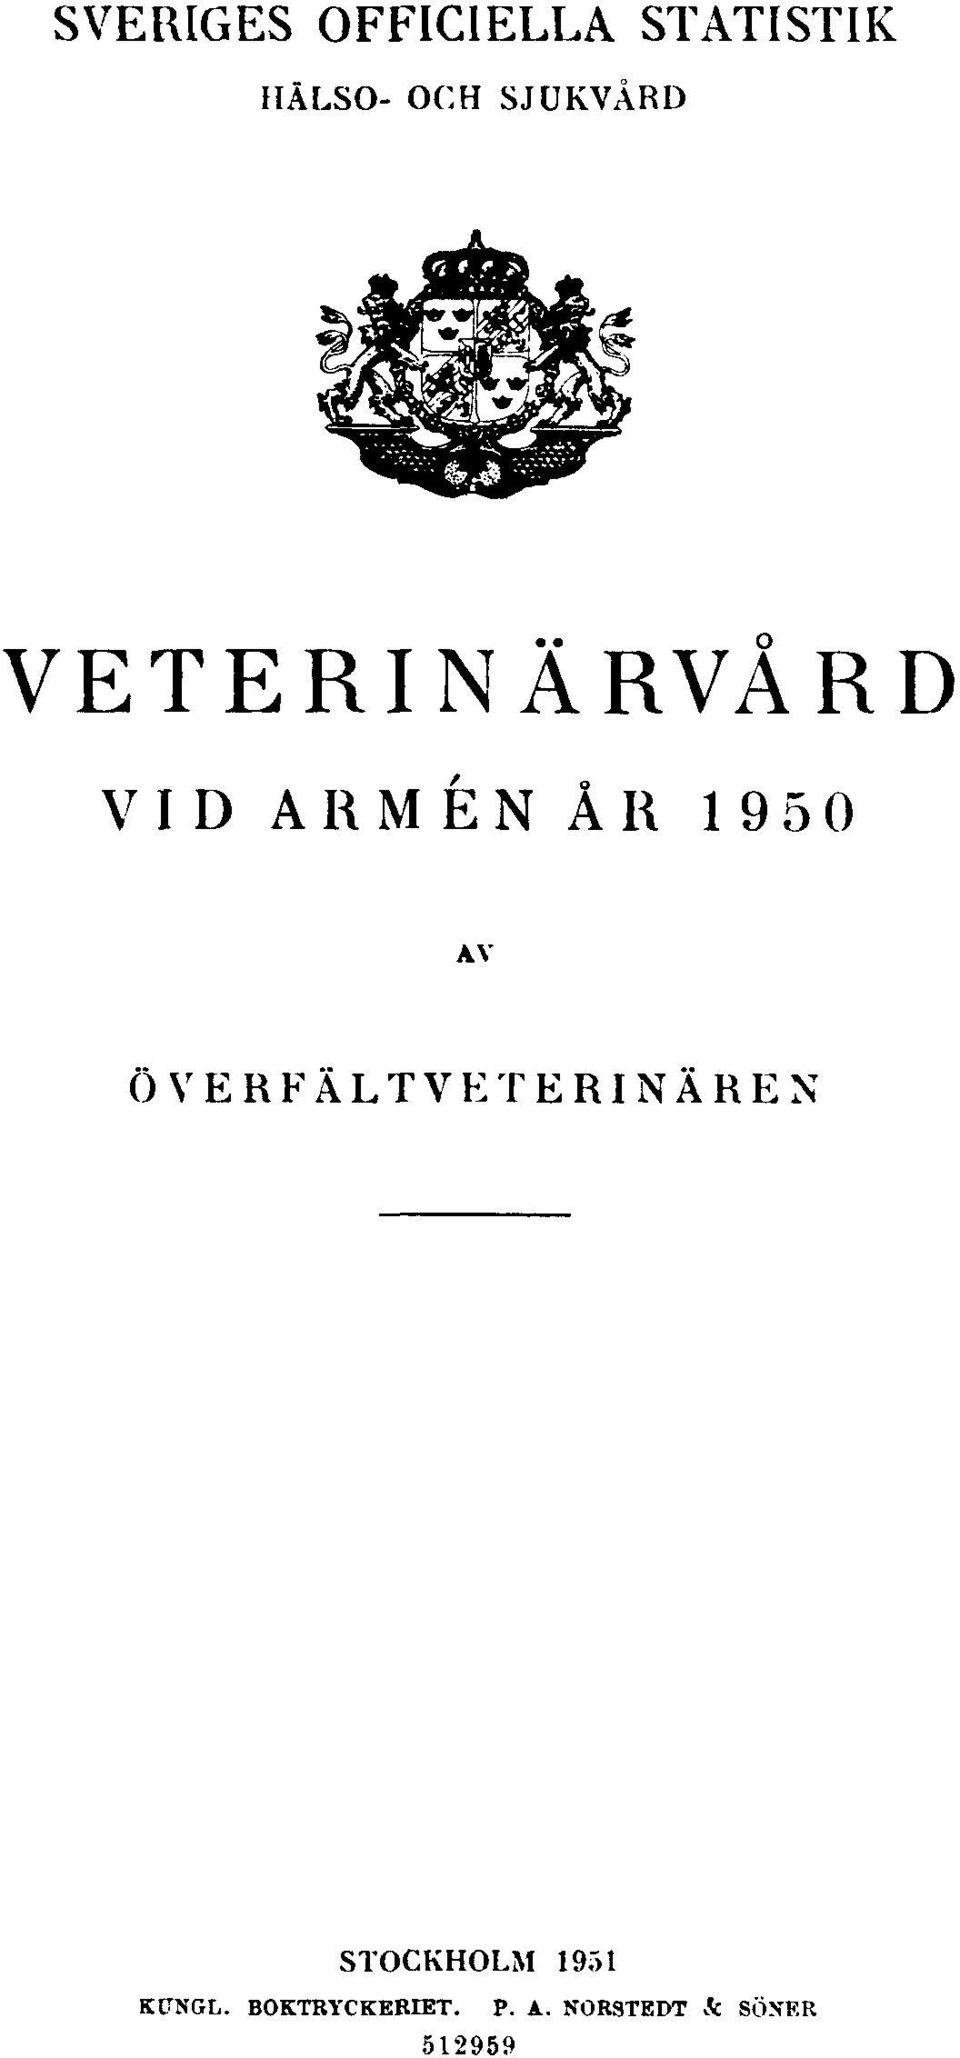 AV ÖVERFÄLTVETERINÄREN STOCKHOLM 1951